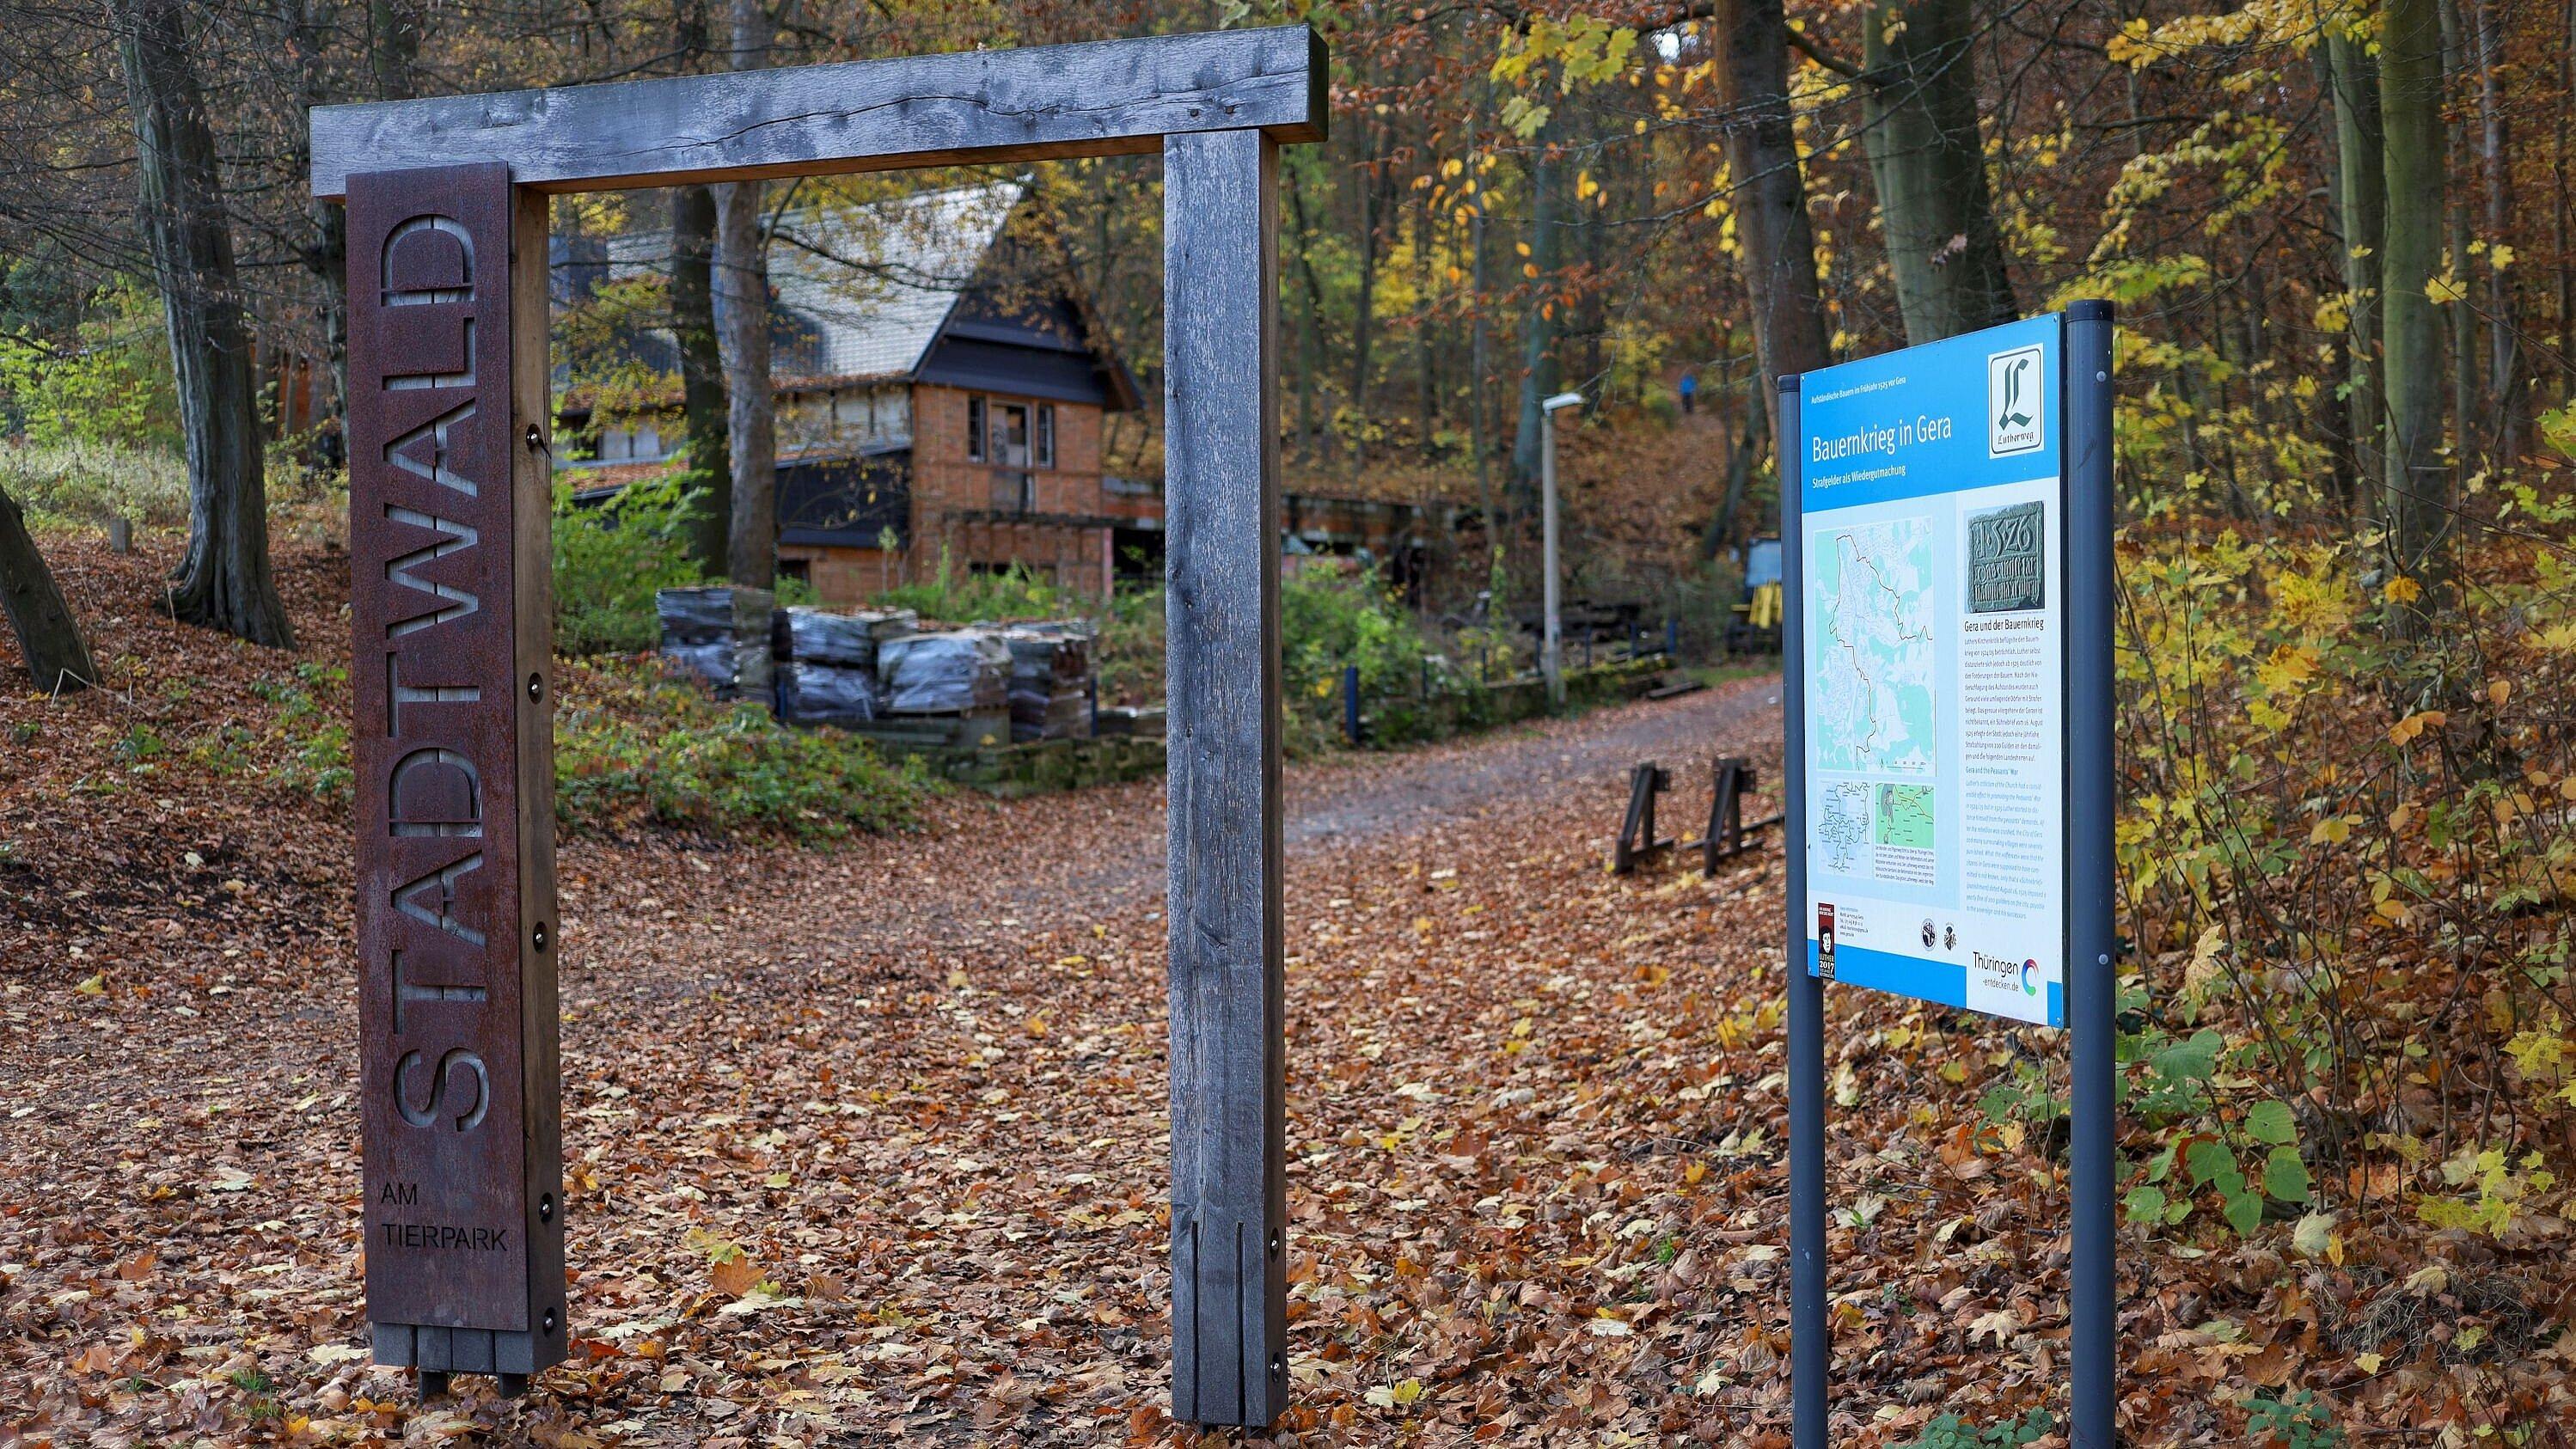 Stadtwaldtor und Lutherweg-Informationstafel im Wald